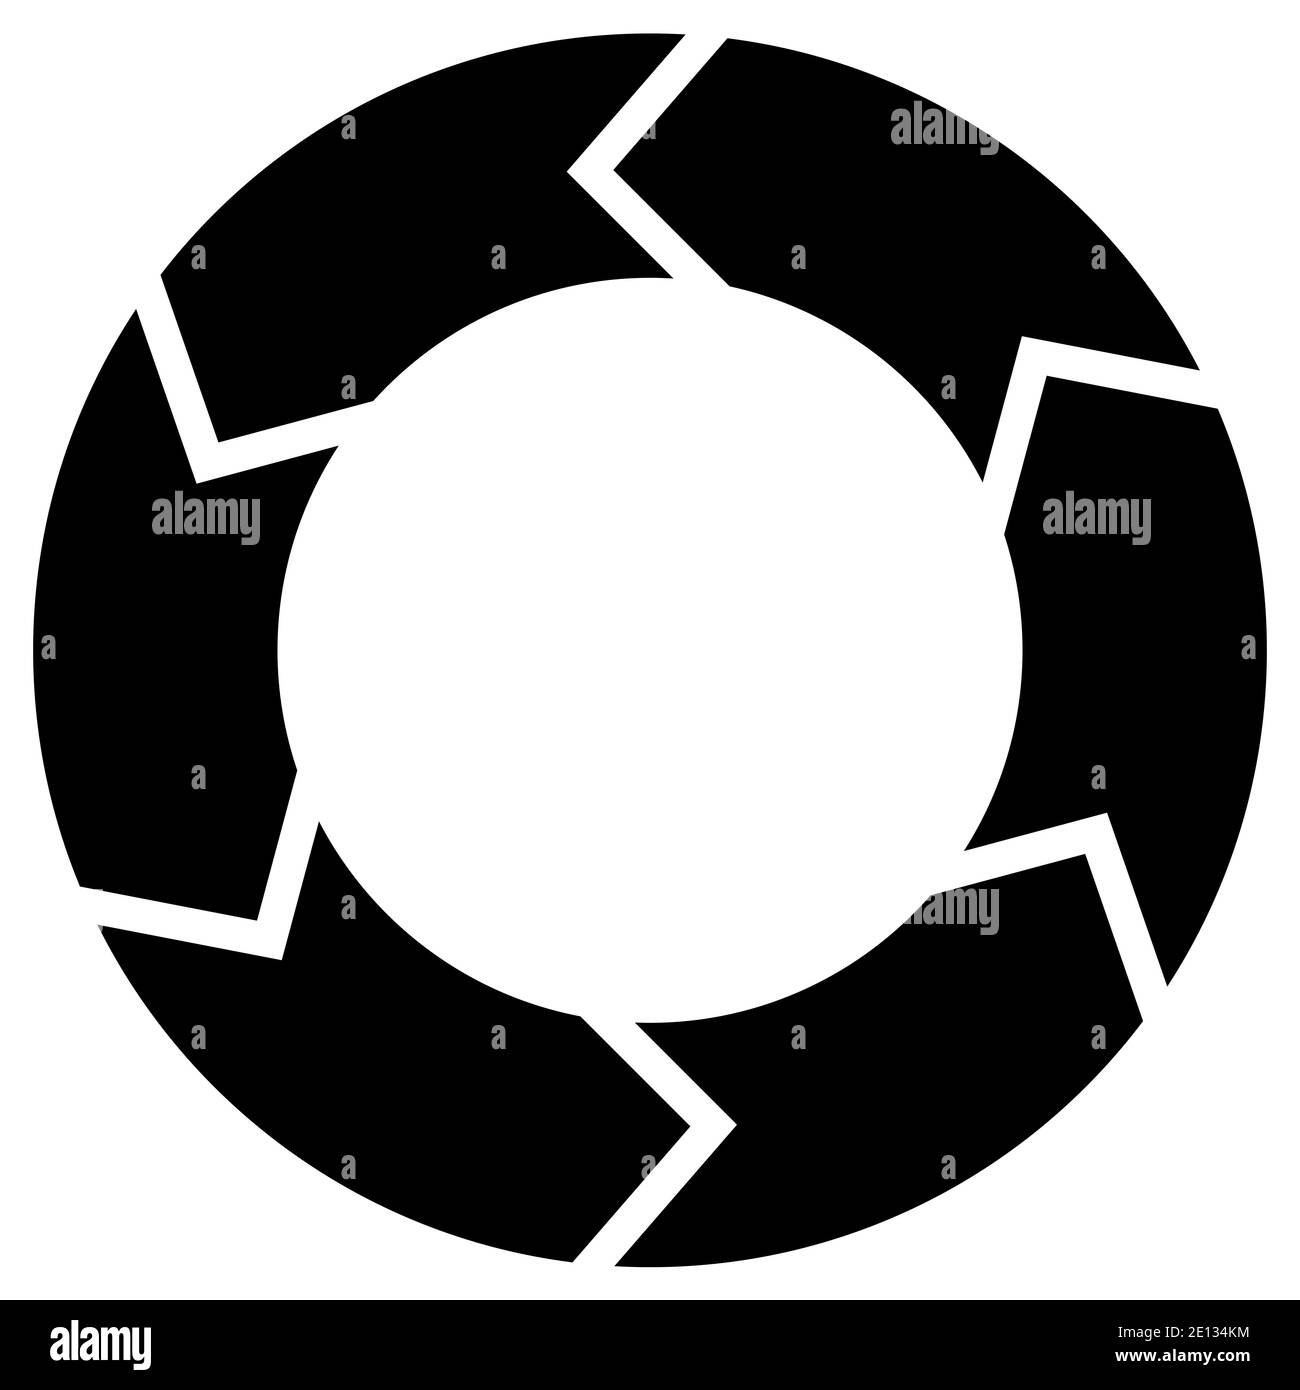 Kreisdiagramm mit Rotation, sechs Stufen. Schwarz auf weißem Hintergrund. Stock Vektor